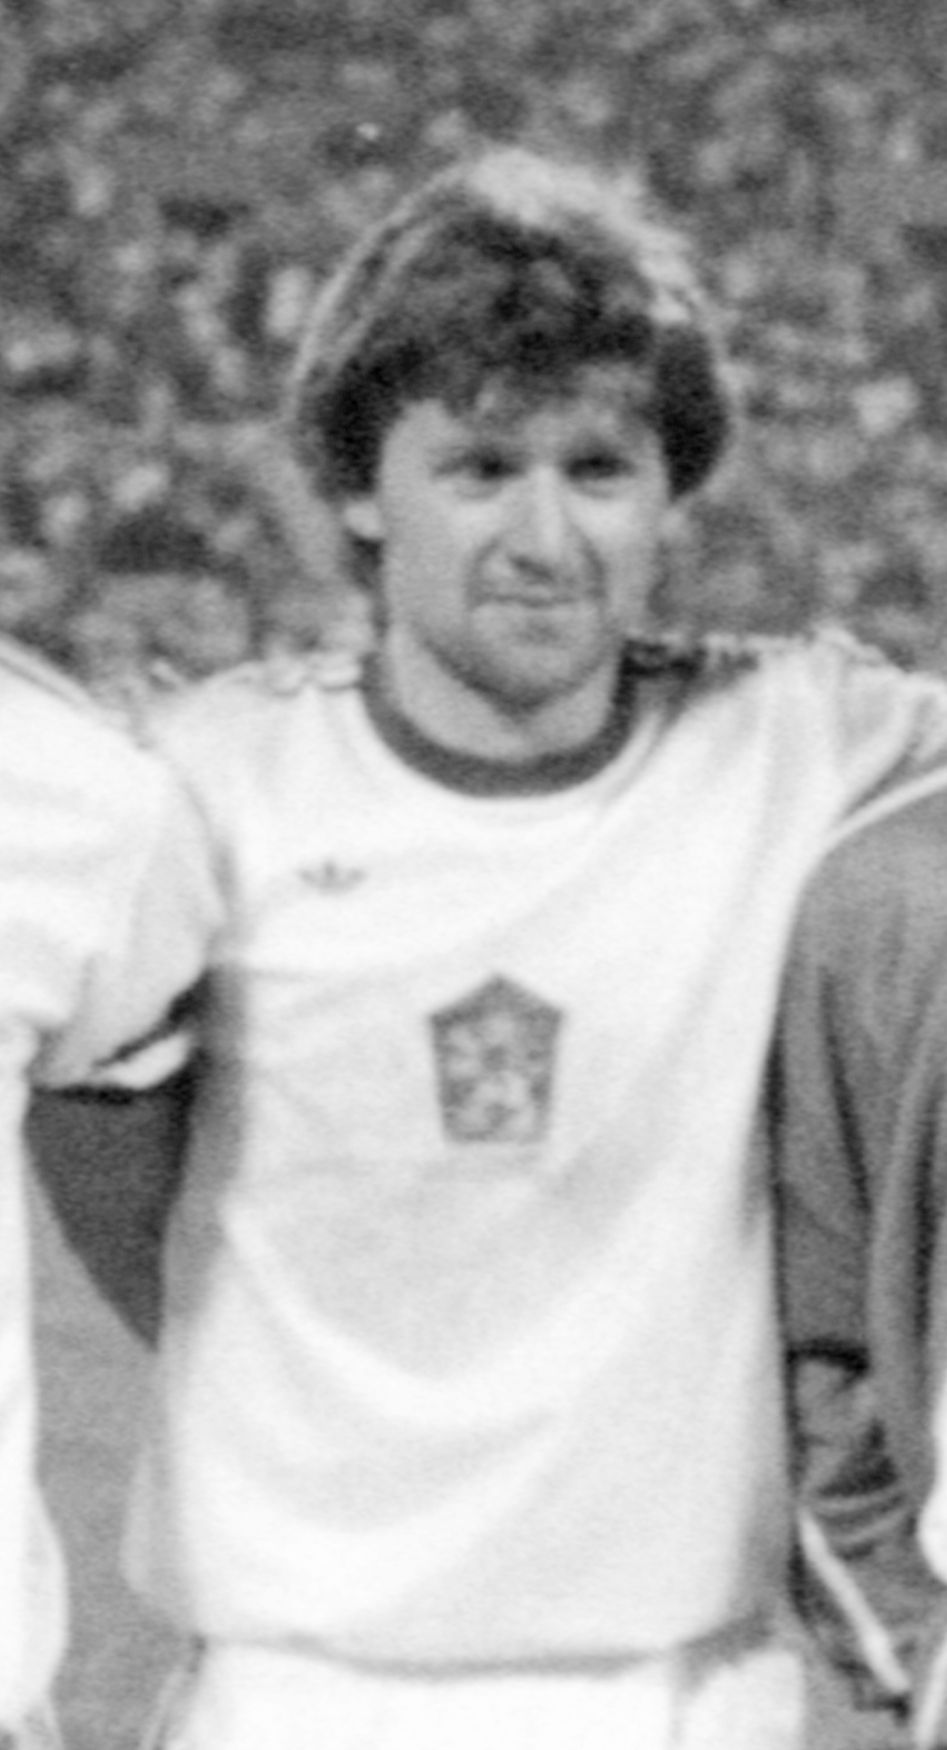 Českoslovenští fotbalisté na LOH 1980